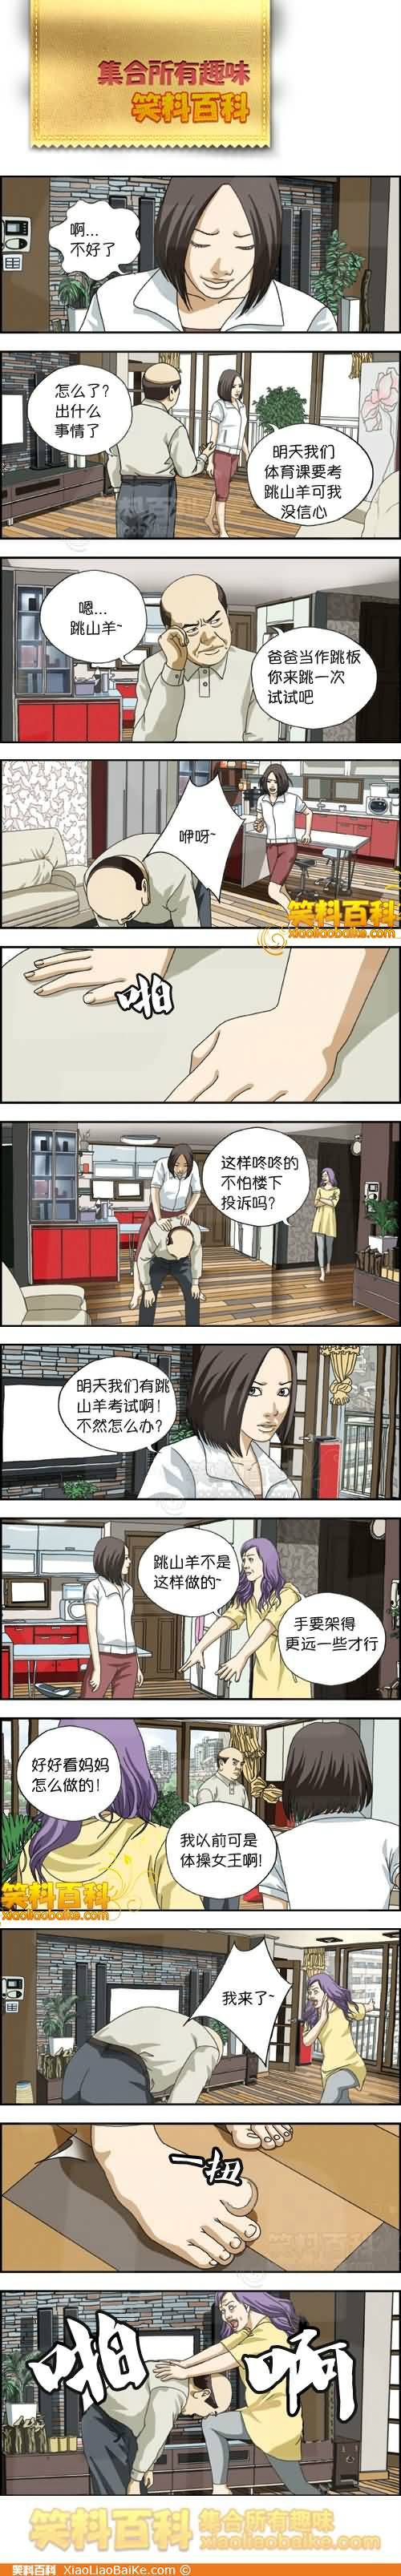 邪恶漫画爆笑囧图第292刊：赶紧的